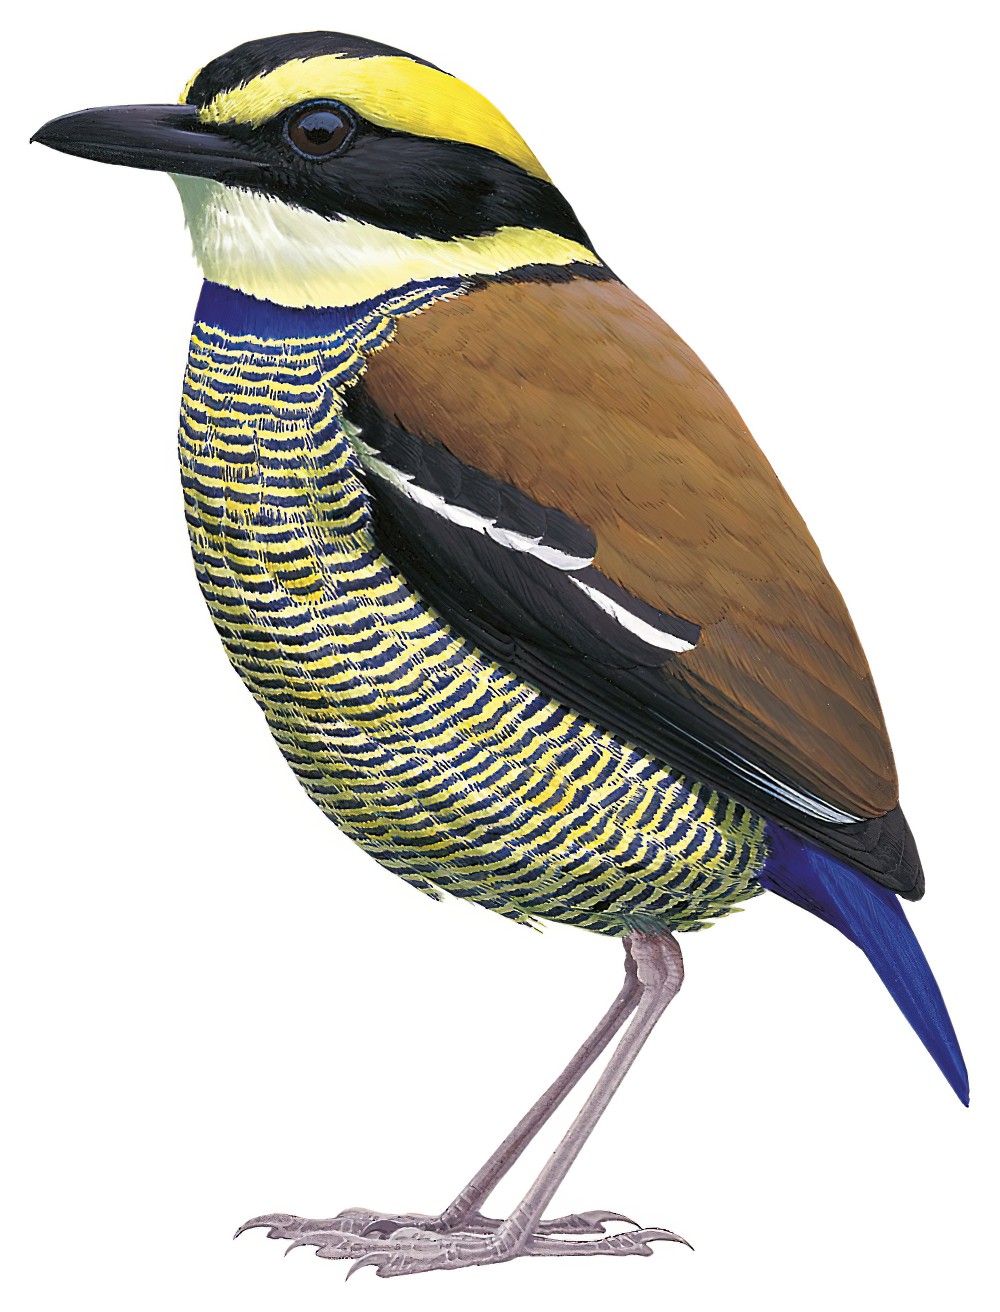 Javan Banded-Pitta / Hydrornis guajanus